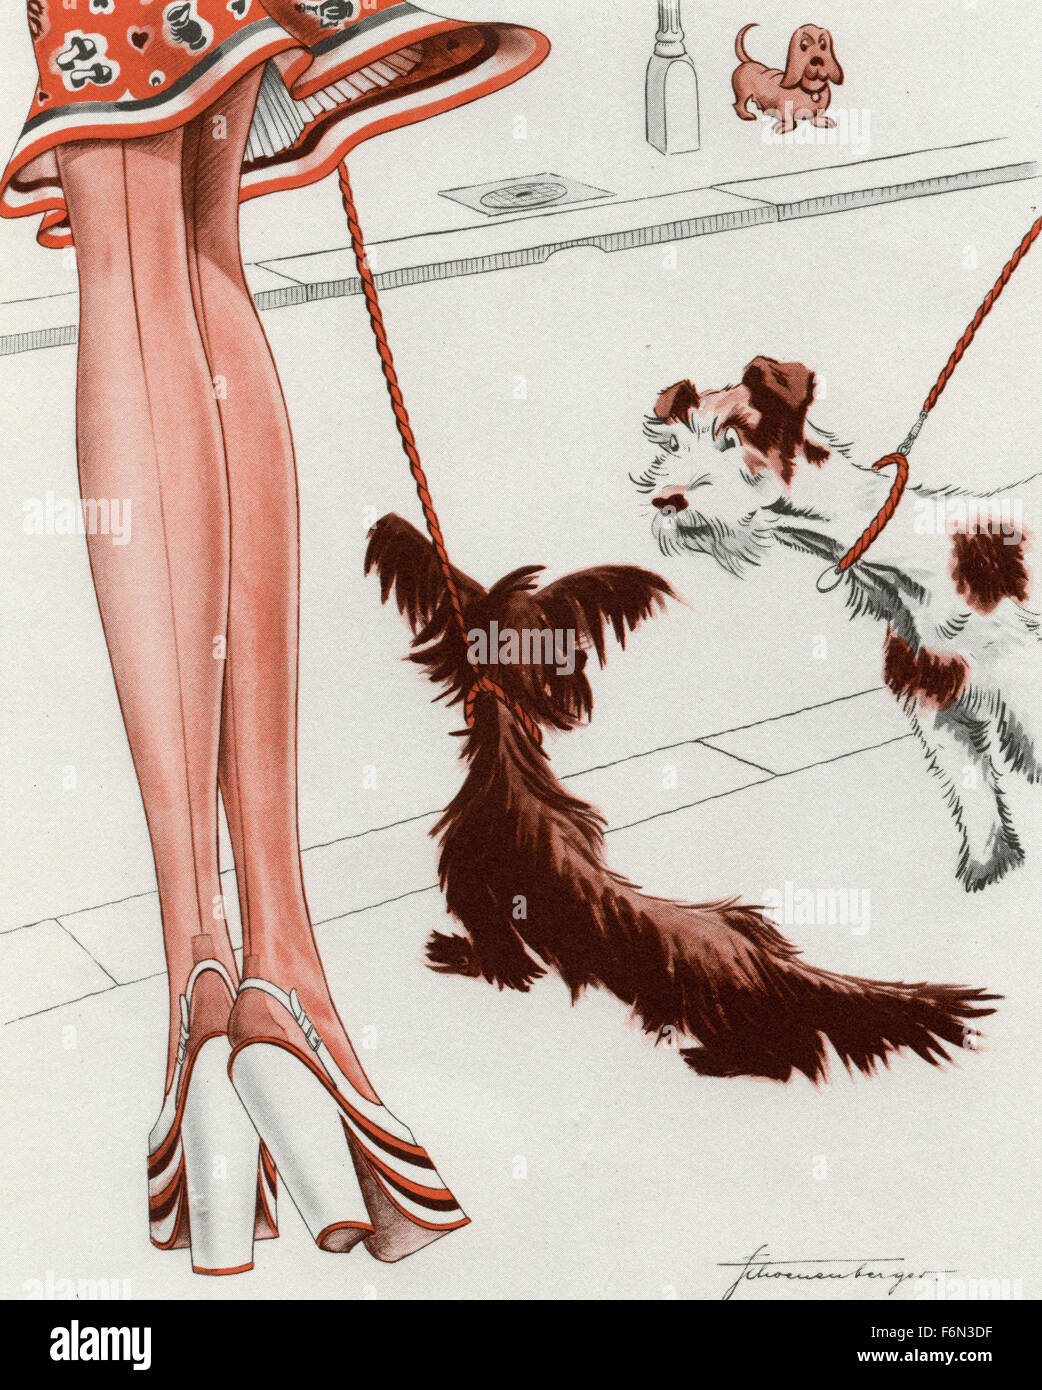 Illustrations satiriques allemand 1950 : les chevilles d'une femme et deux chiens Banque D'Images